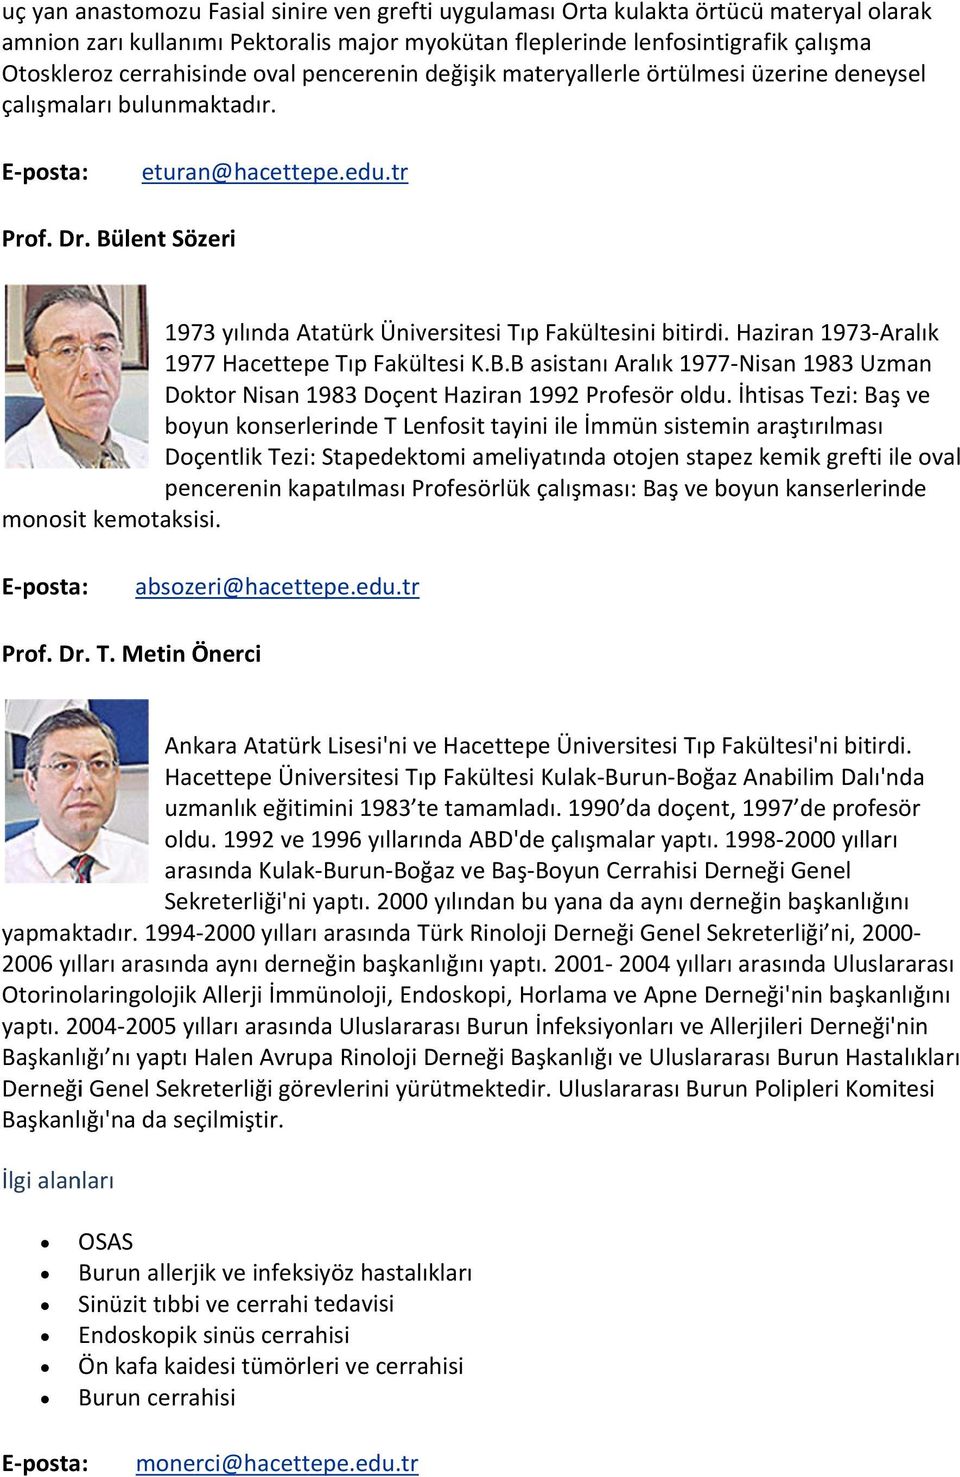 Bülent Sözeri 1973 yılında Atatürk Üniversitesi Tıp Fakültesini bitirdi. Haziran 1973 Aralık 1977 Hacettepe Tıp Fakültesi K.B.B asistanı Aralık 1977 Nisan 1983 Uzman Doktor Nisan 1983 Doçent Haziran 1992 Profesör oldu.